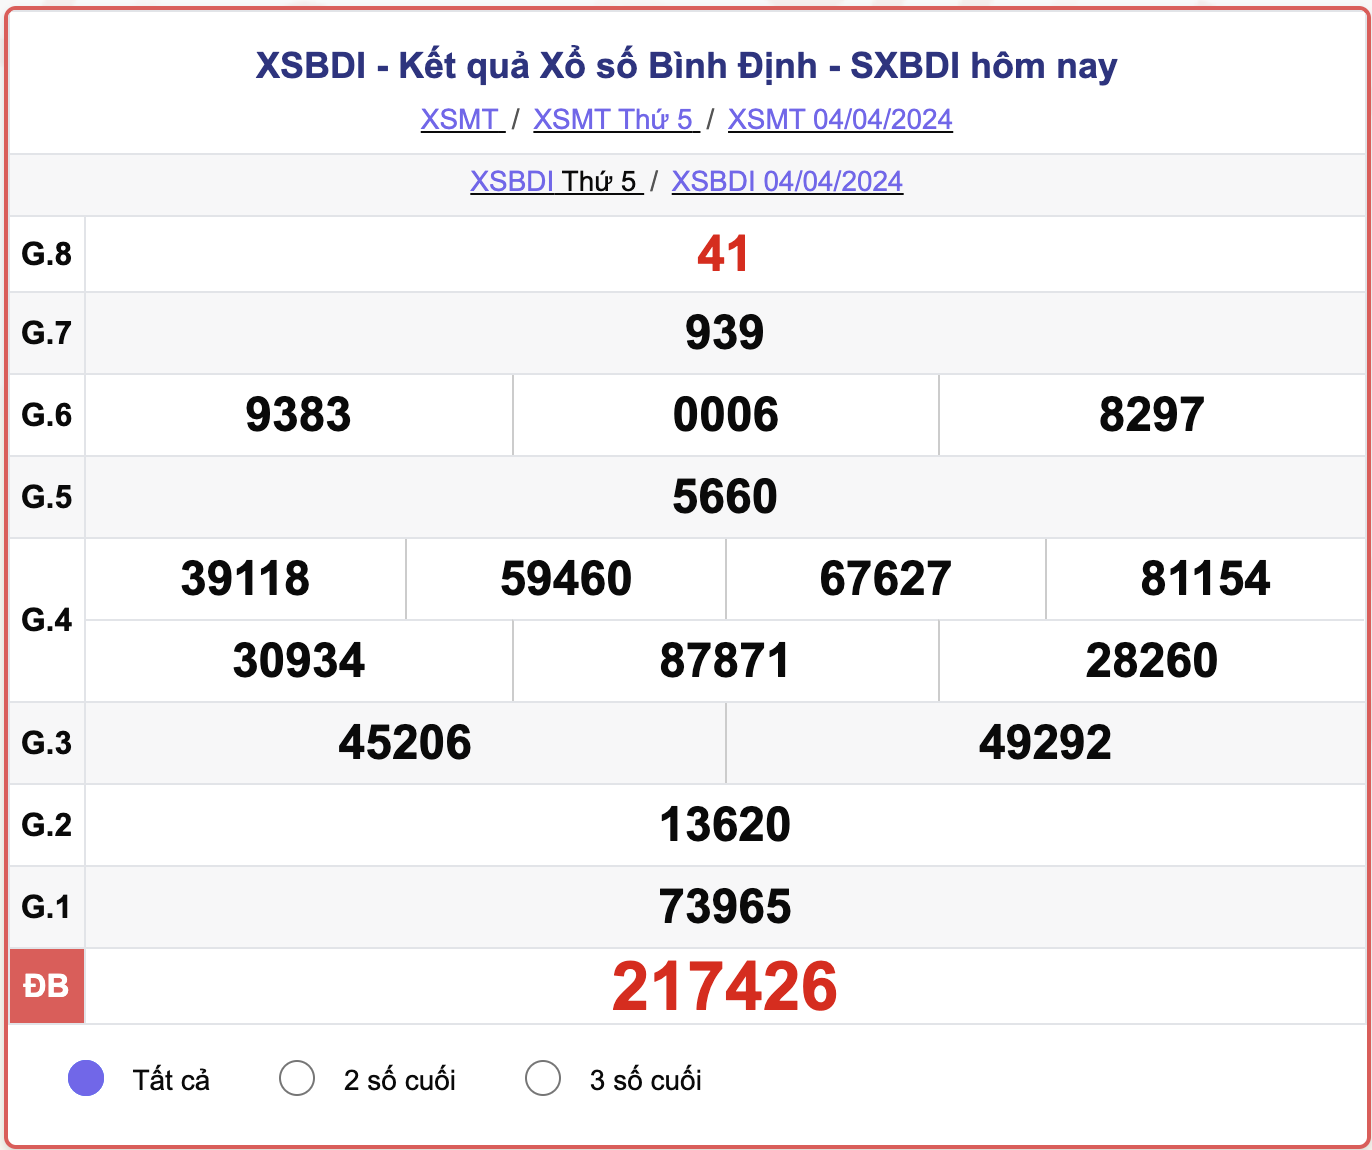 XSBDI thứ 5, kết quả xổ số Bình Định ngày 4/4/2024